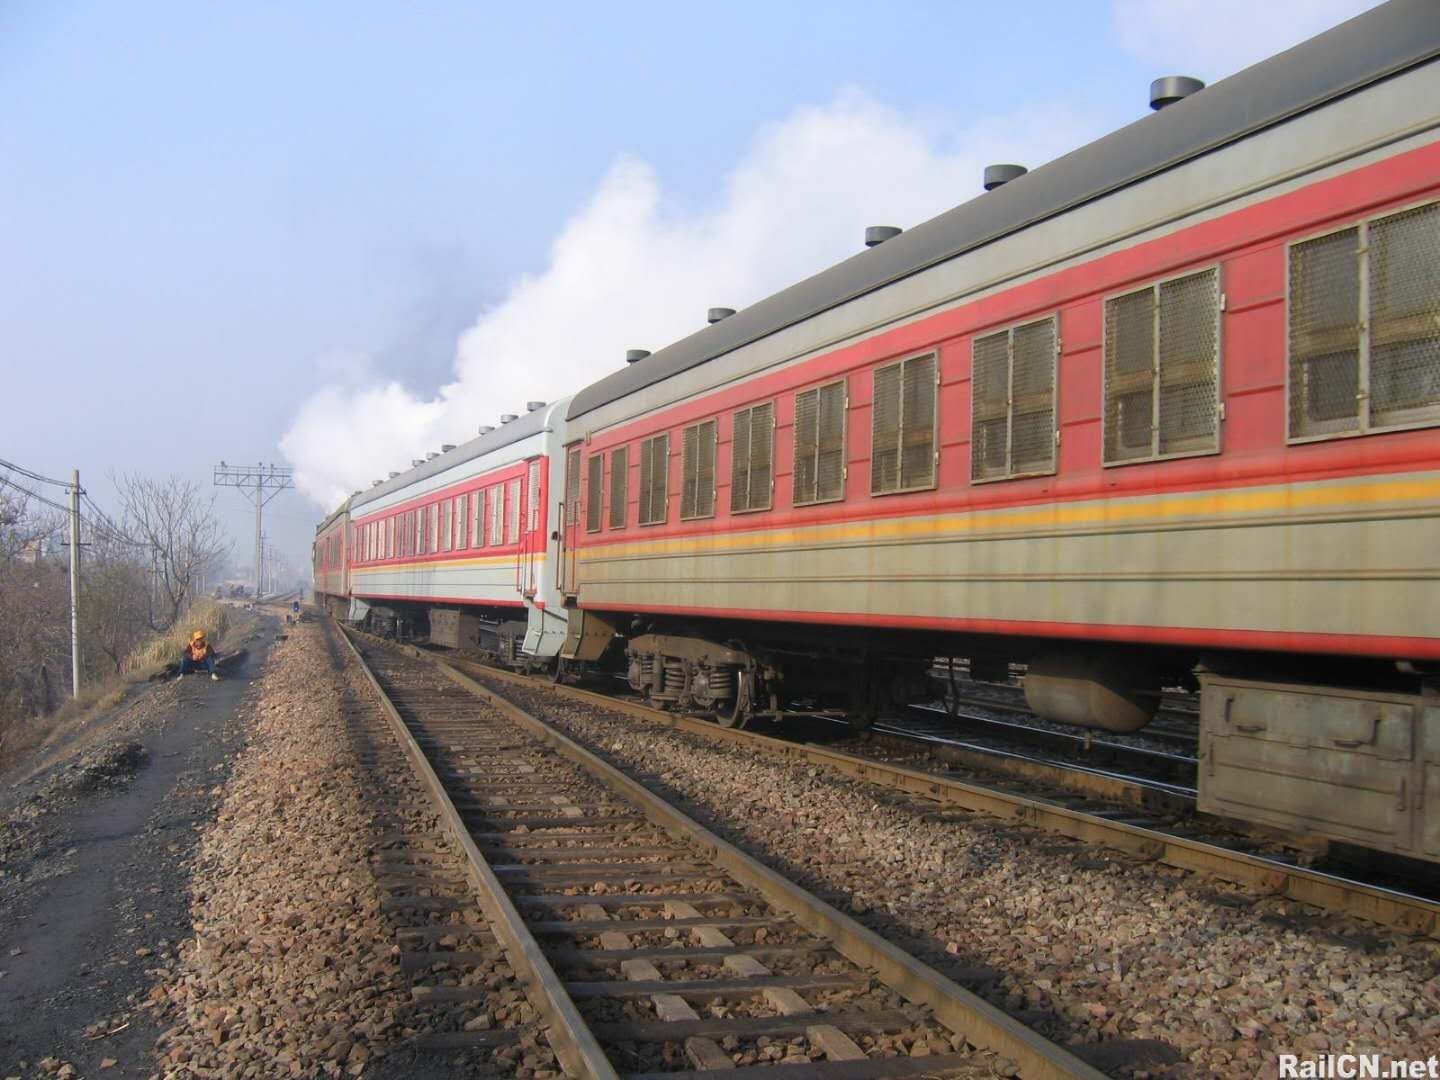 平煤铁路通勤列车是否终将会成为一代人的回忆